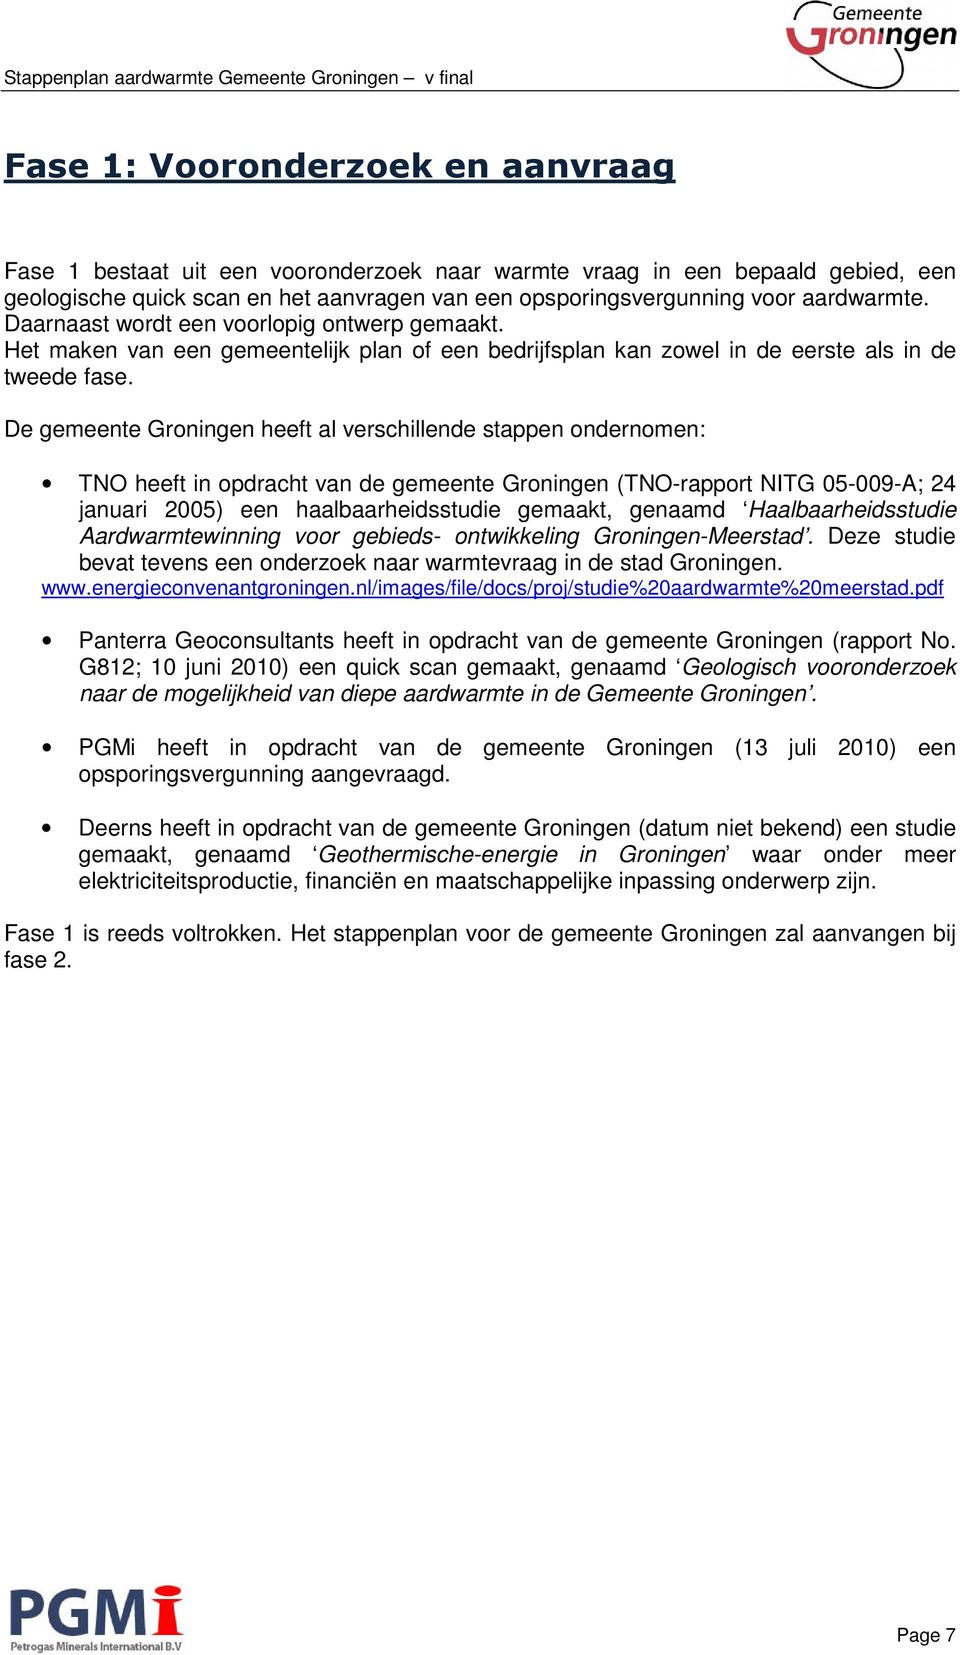 De gemeente Groningen heeft al verschillende stappen ondernomen: TNO heeft in opdracht van de gemeente Groningen (TNO-rapport NITG 05-009-A; 24 januari 2005) een haalbaarheidsstudie gemaakt, genaamd